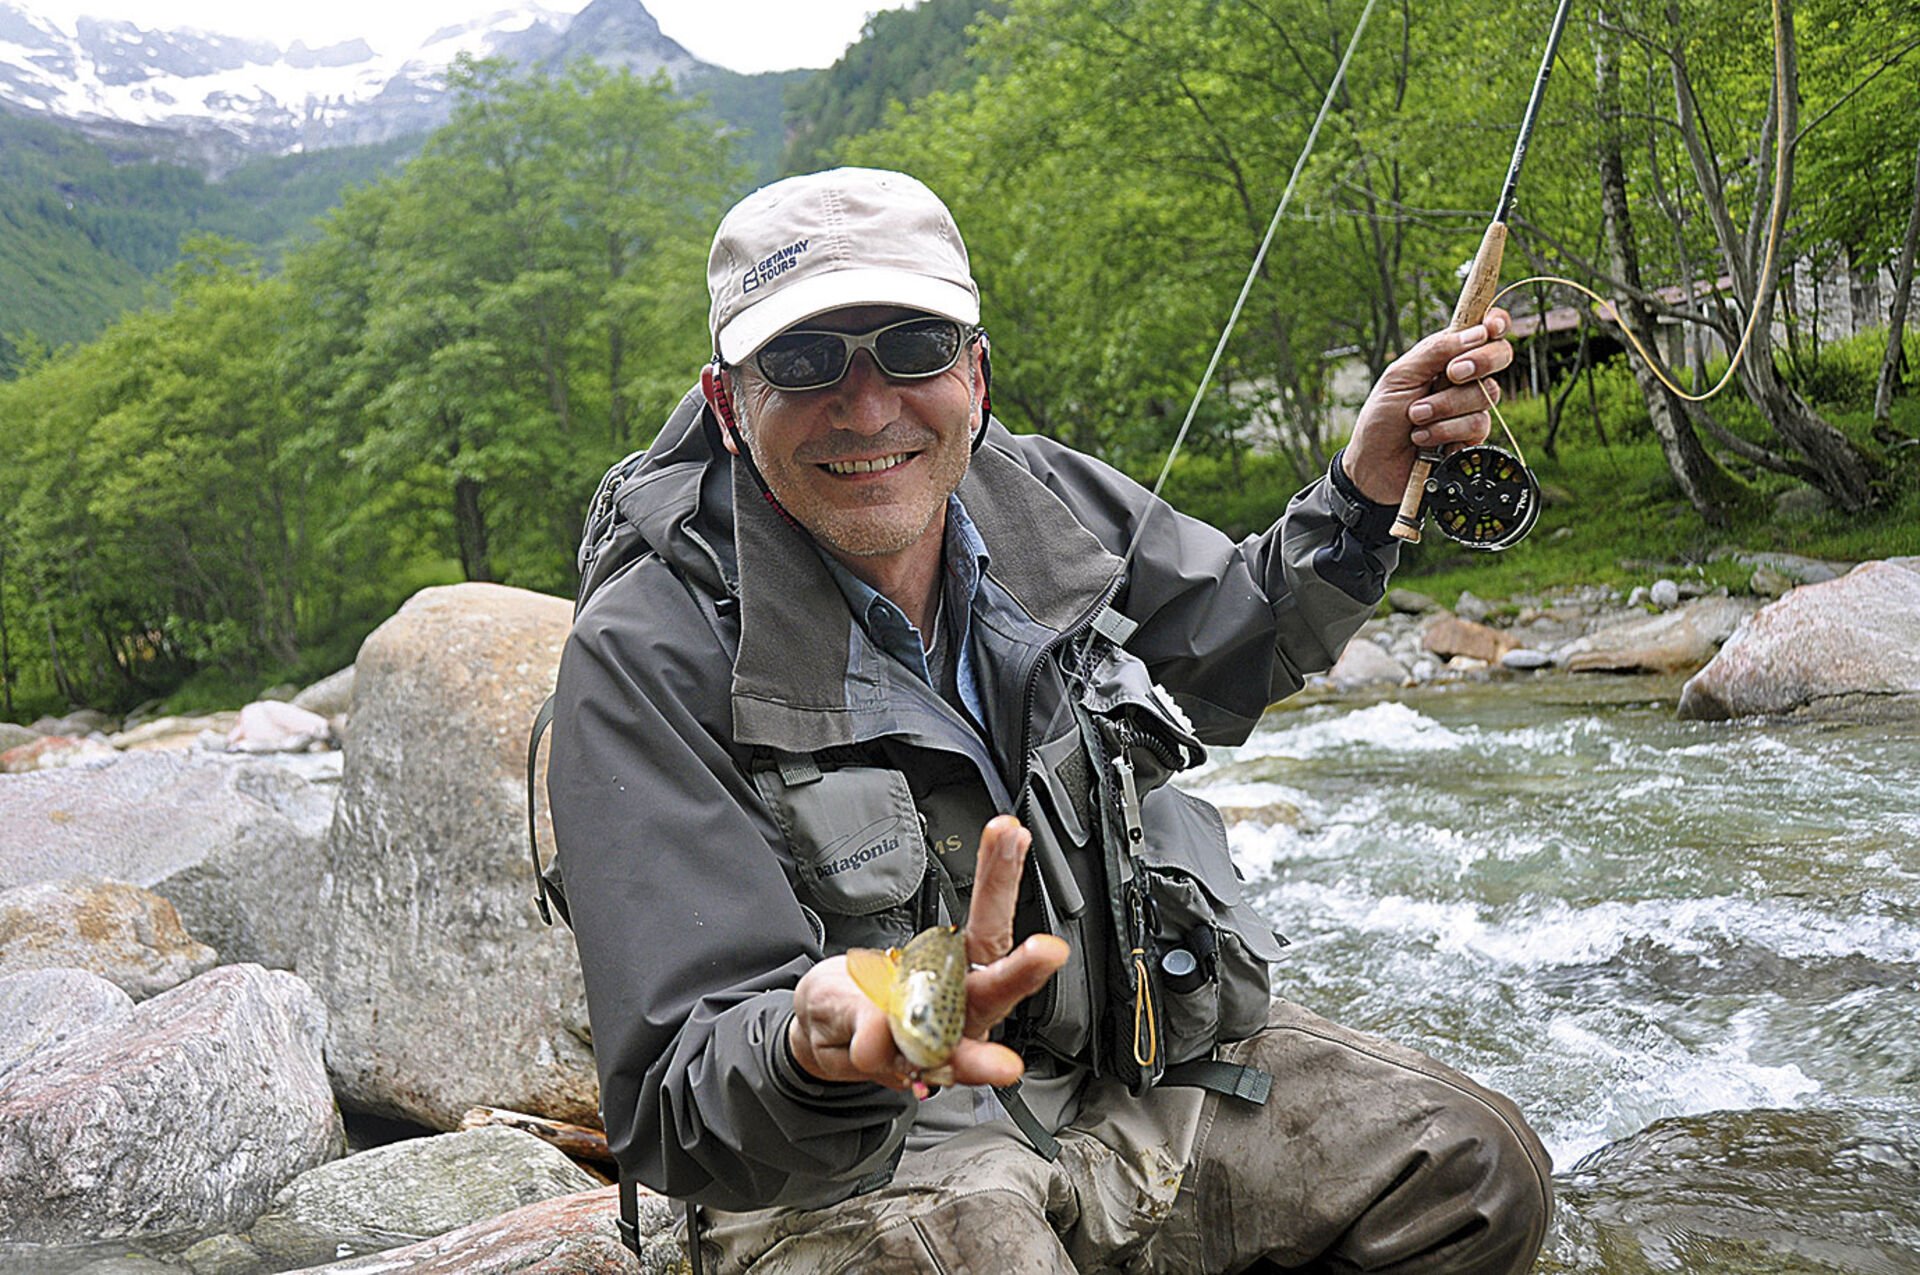  Mein Guide Mauro fischt effizient: Seine Fliege ist fast immer auf dem Wasser oder im Maul eines Fischs.  